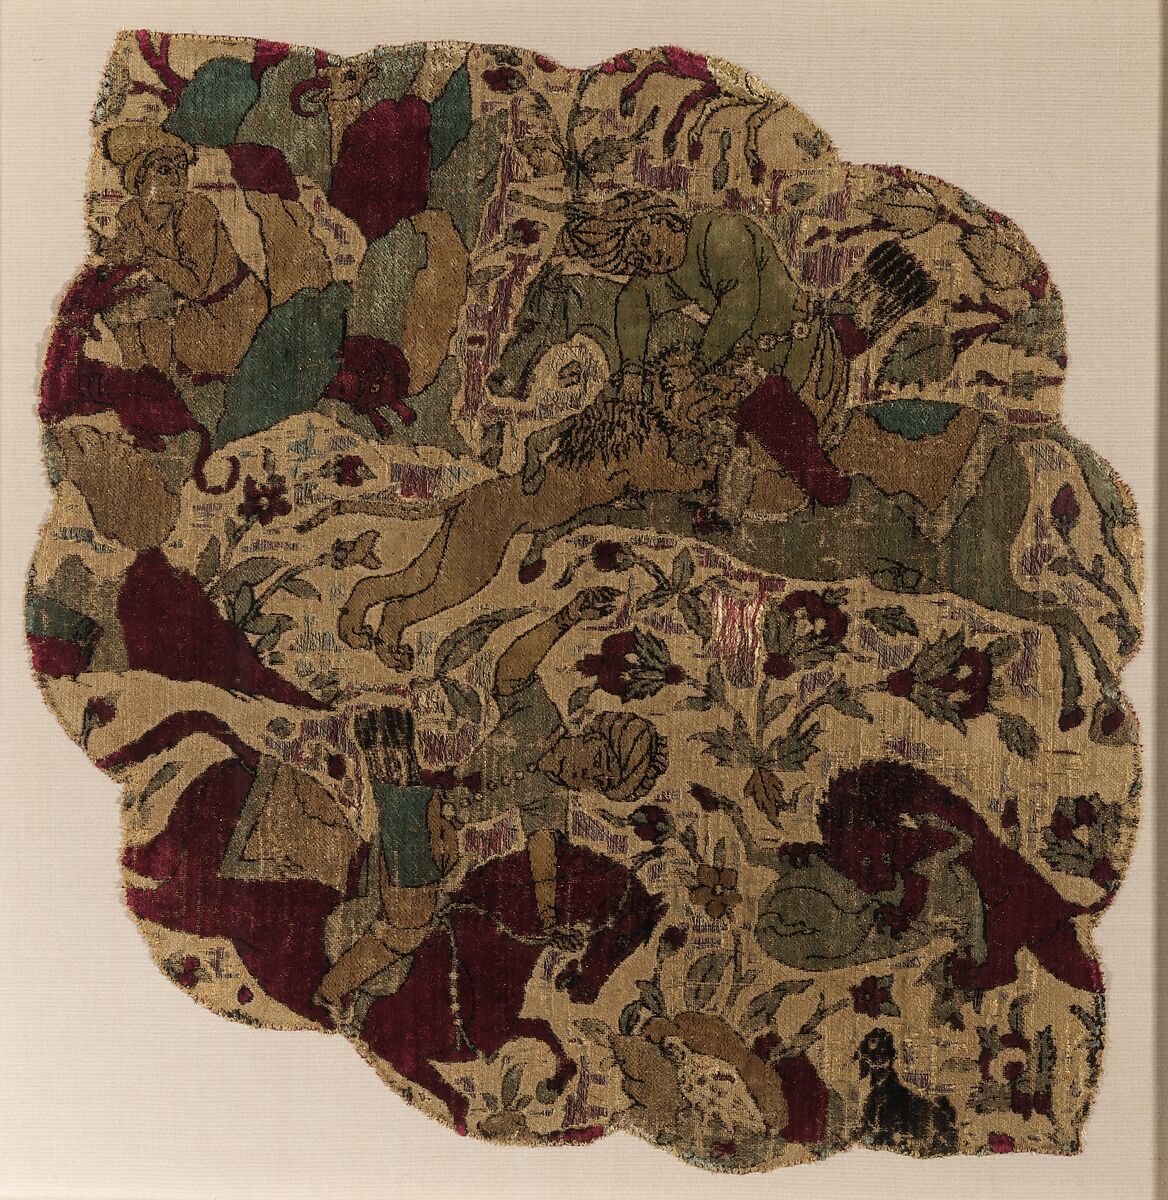 Velvet Panel with Hunting Scene, Silk, flat metal thread; cut and voided velvet 